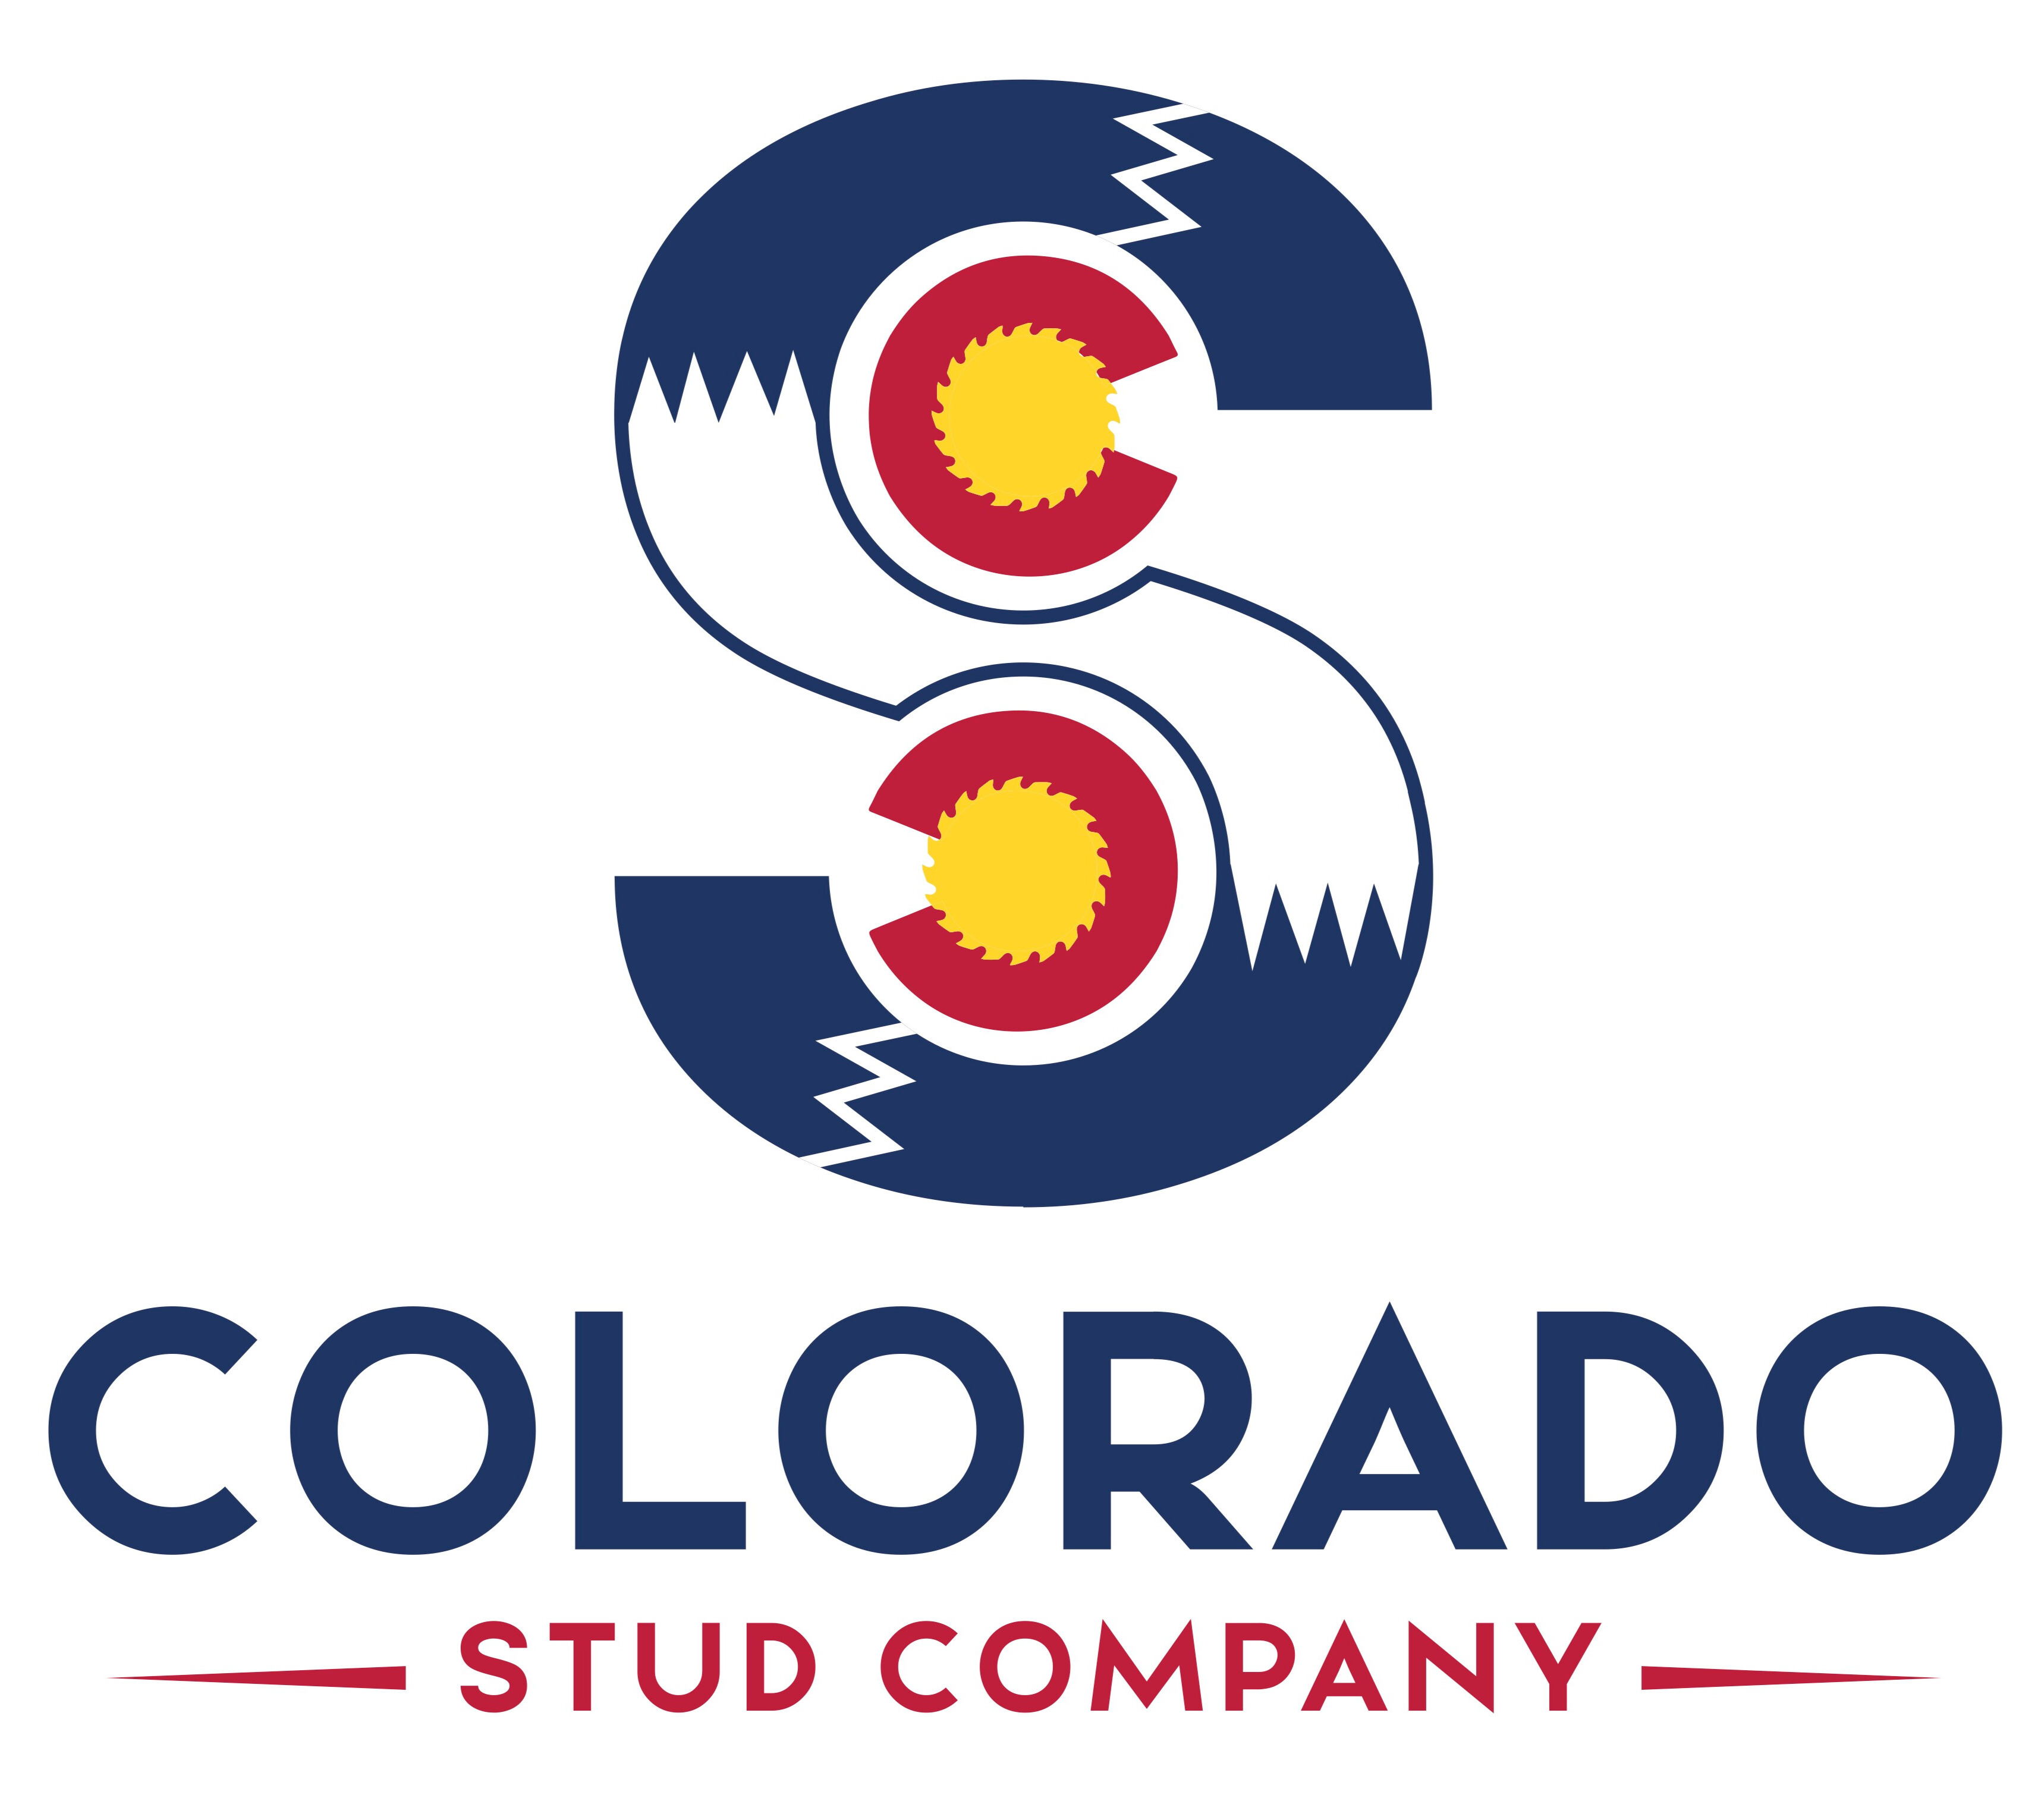 Colorado Stud Company